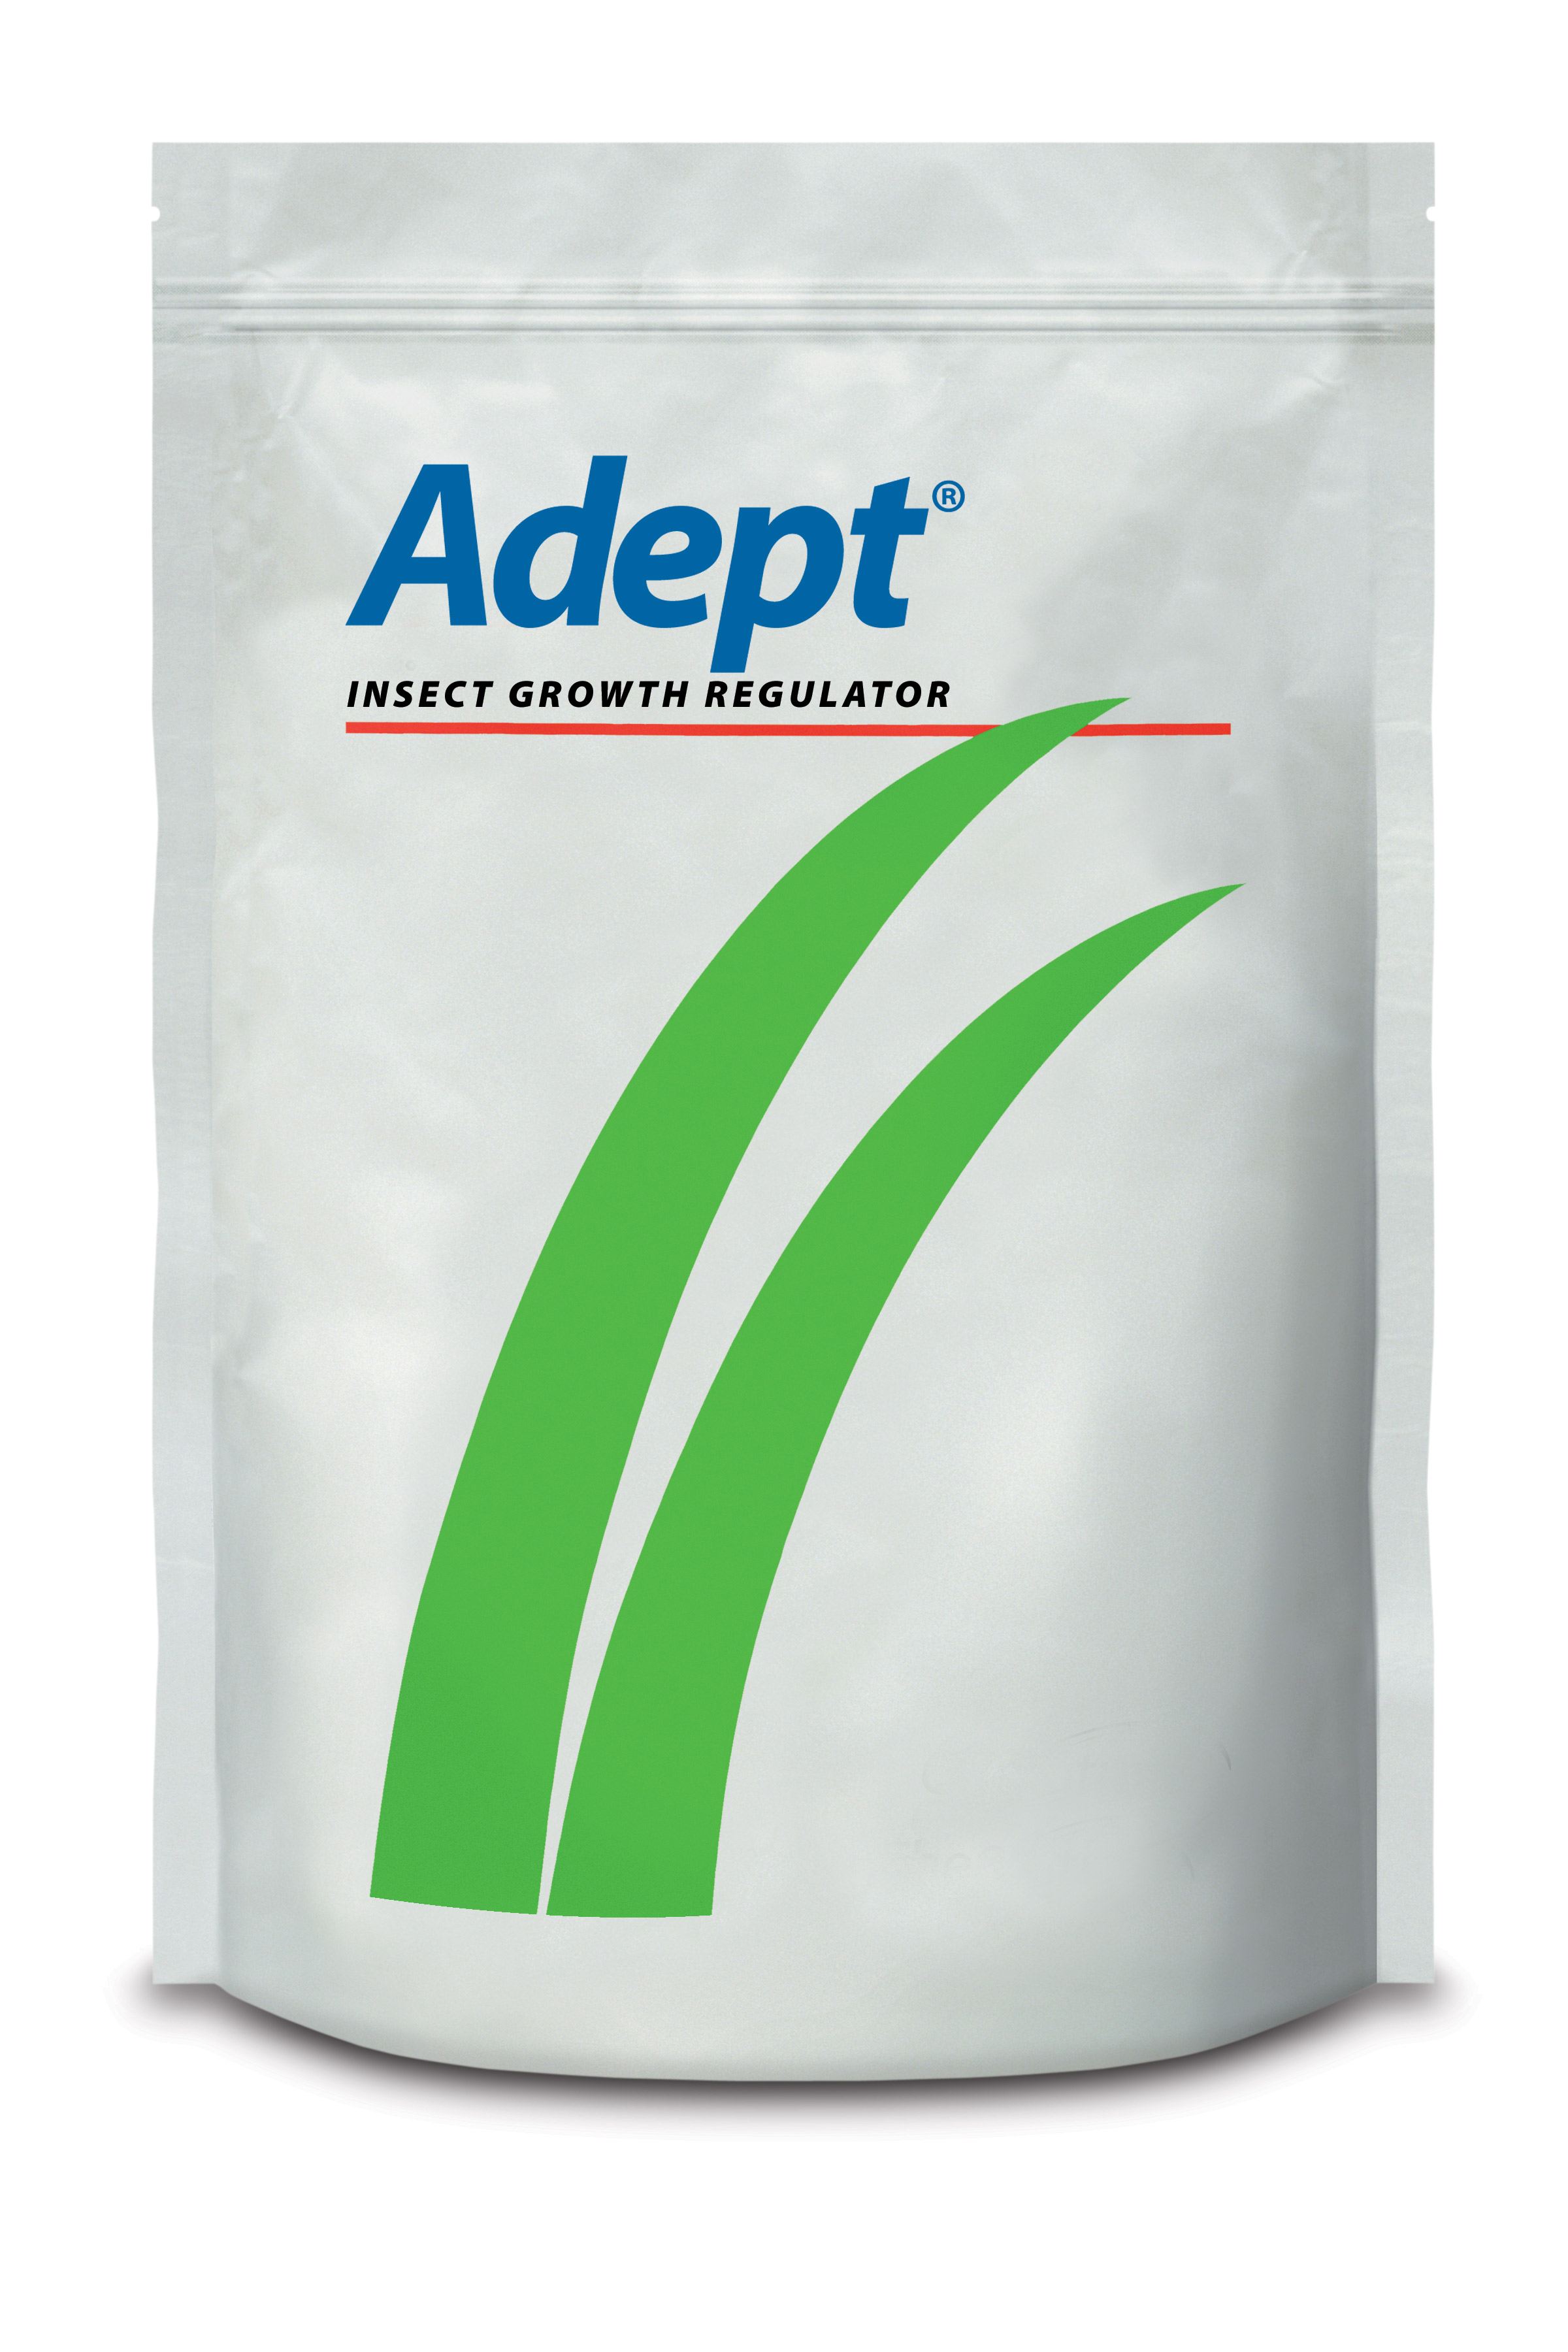 Adept® 25W (16 - 1 oz) 1 lb Bag - 12 per case - Insecticides